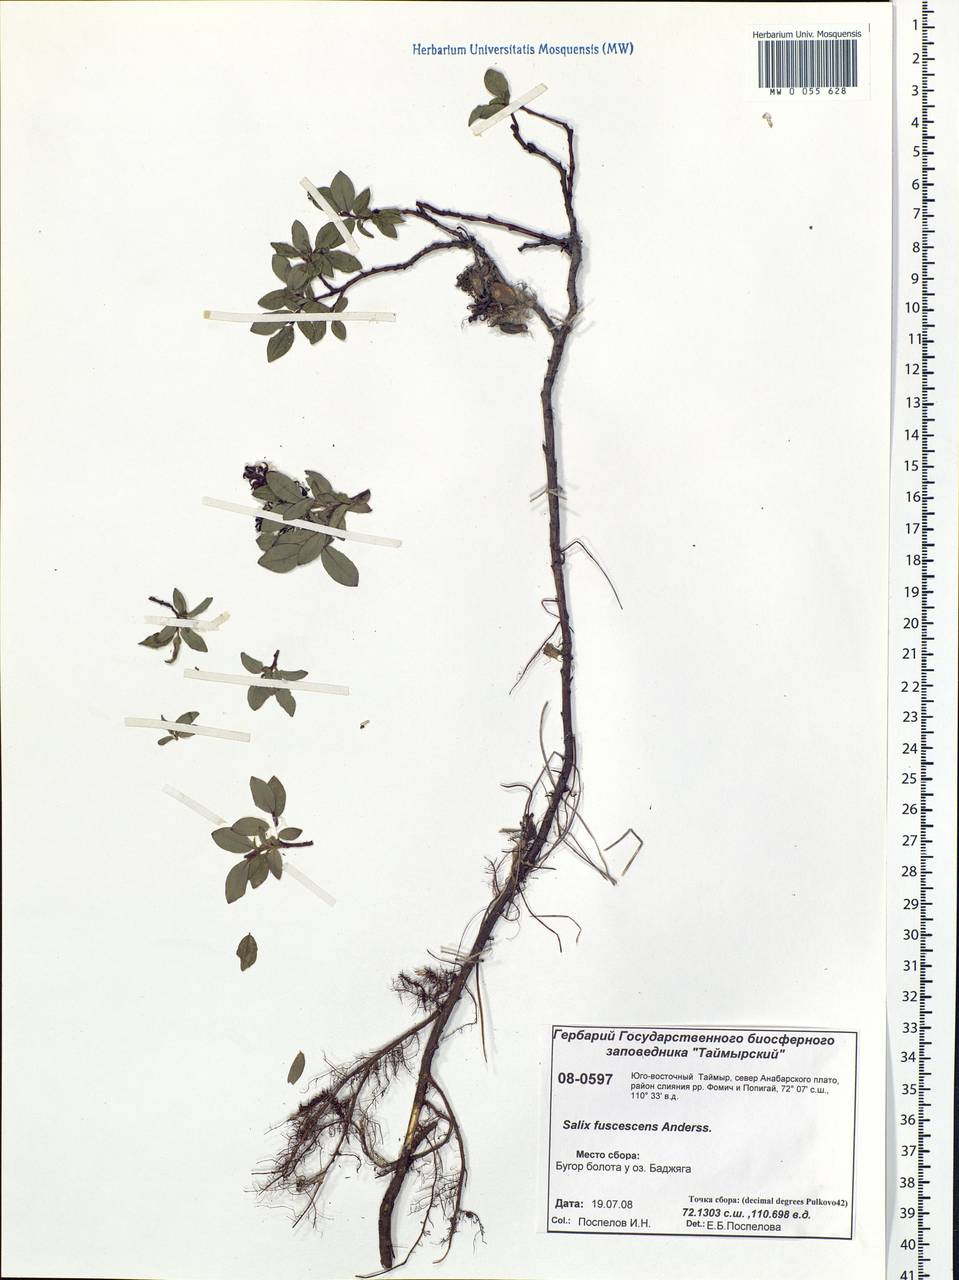 Salix fuscescens Andersson, Siberia, Central Siberia (S3) (Russia)